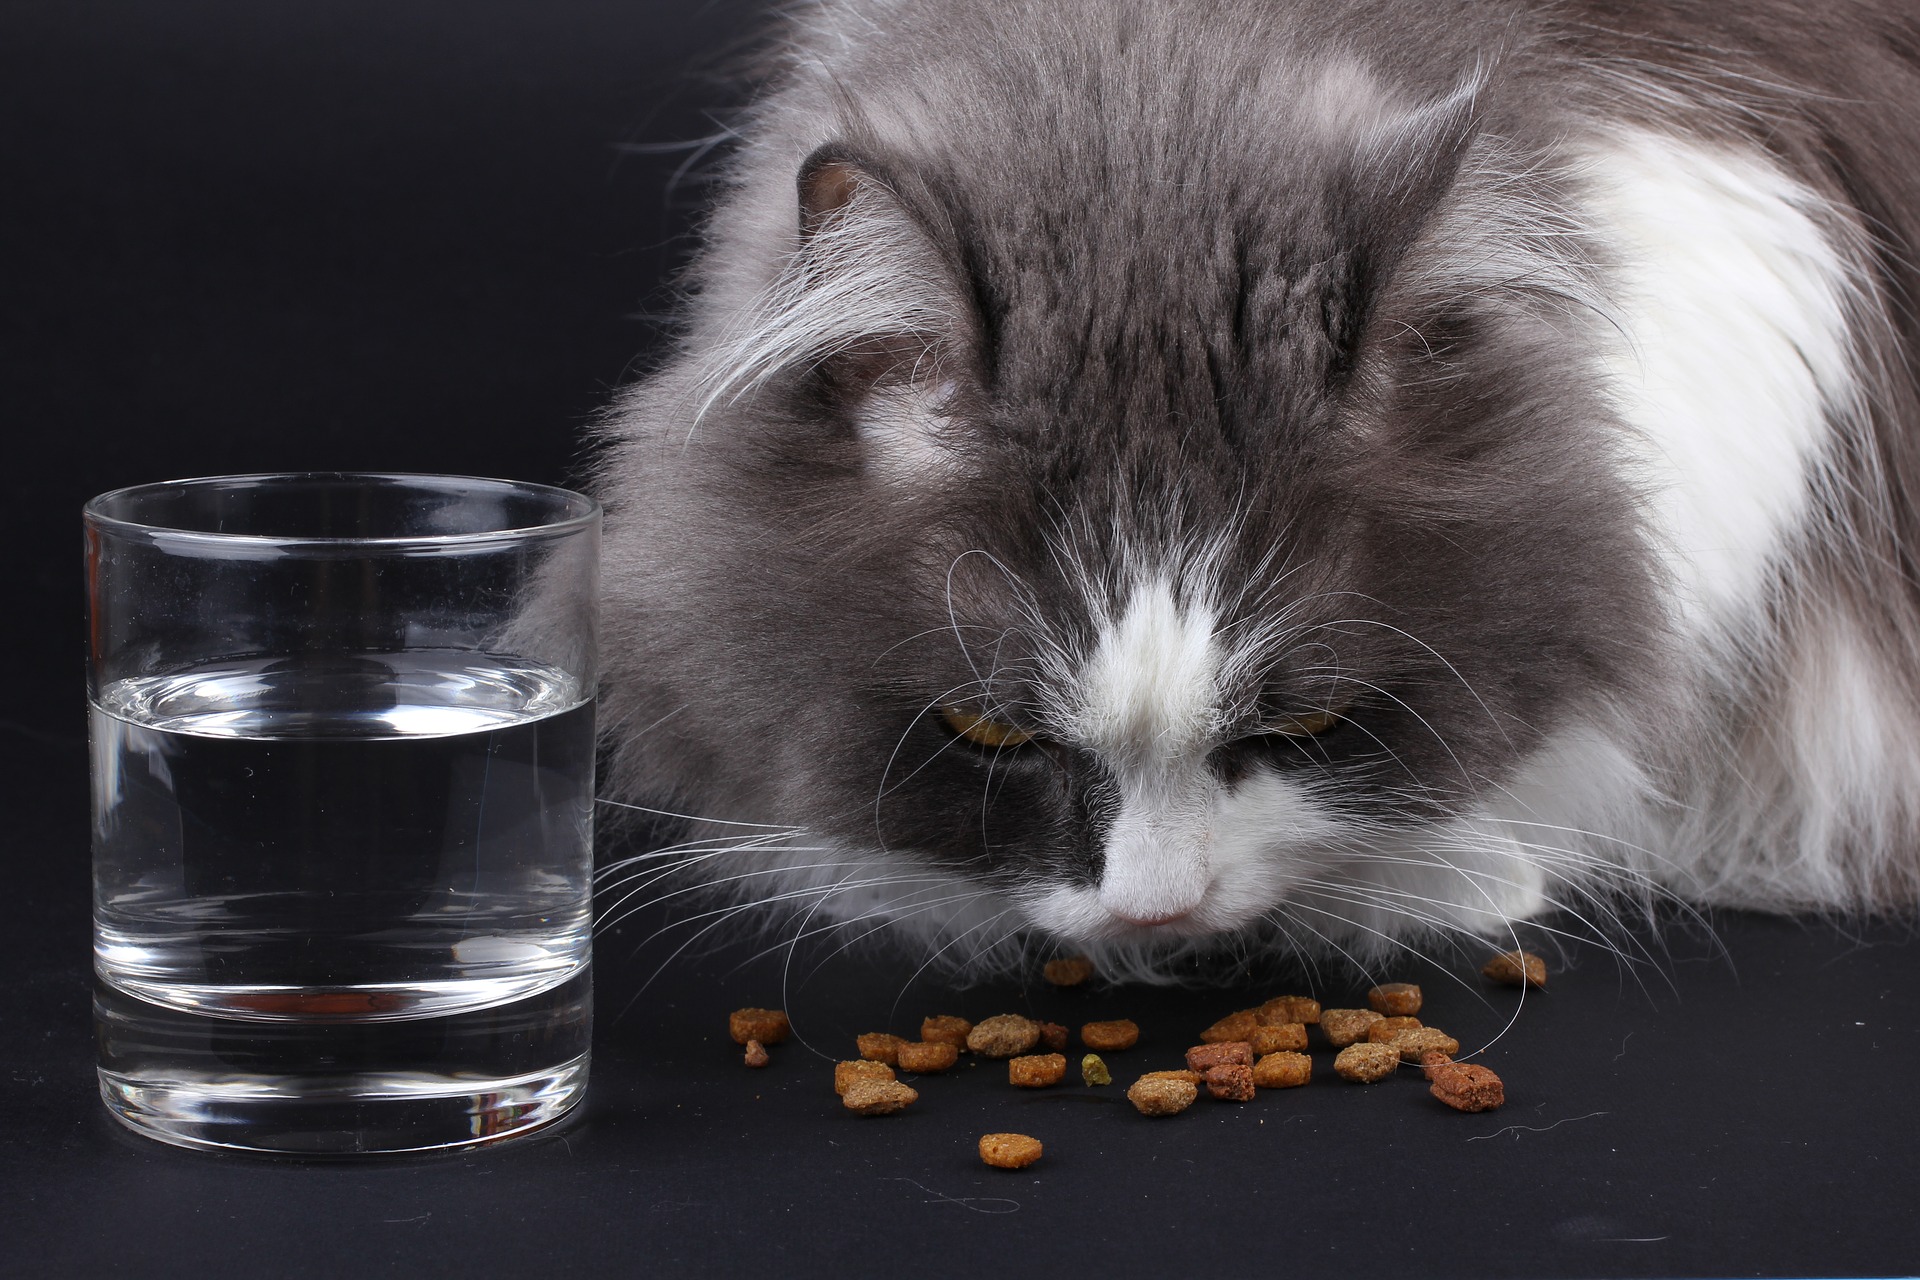 Es wird empfohlen, die Katze mit fleischreichem Nassfutter ohne Zugabe von Getreide zu füttern. Es sollte so viele Mahlzeiten wie möglich geben, aber tagsüber klein. Optimum ist 3-4.